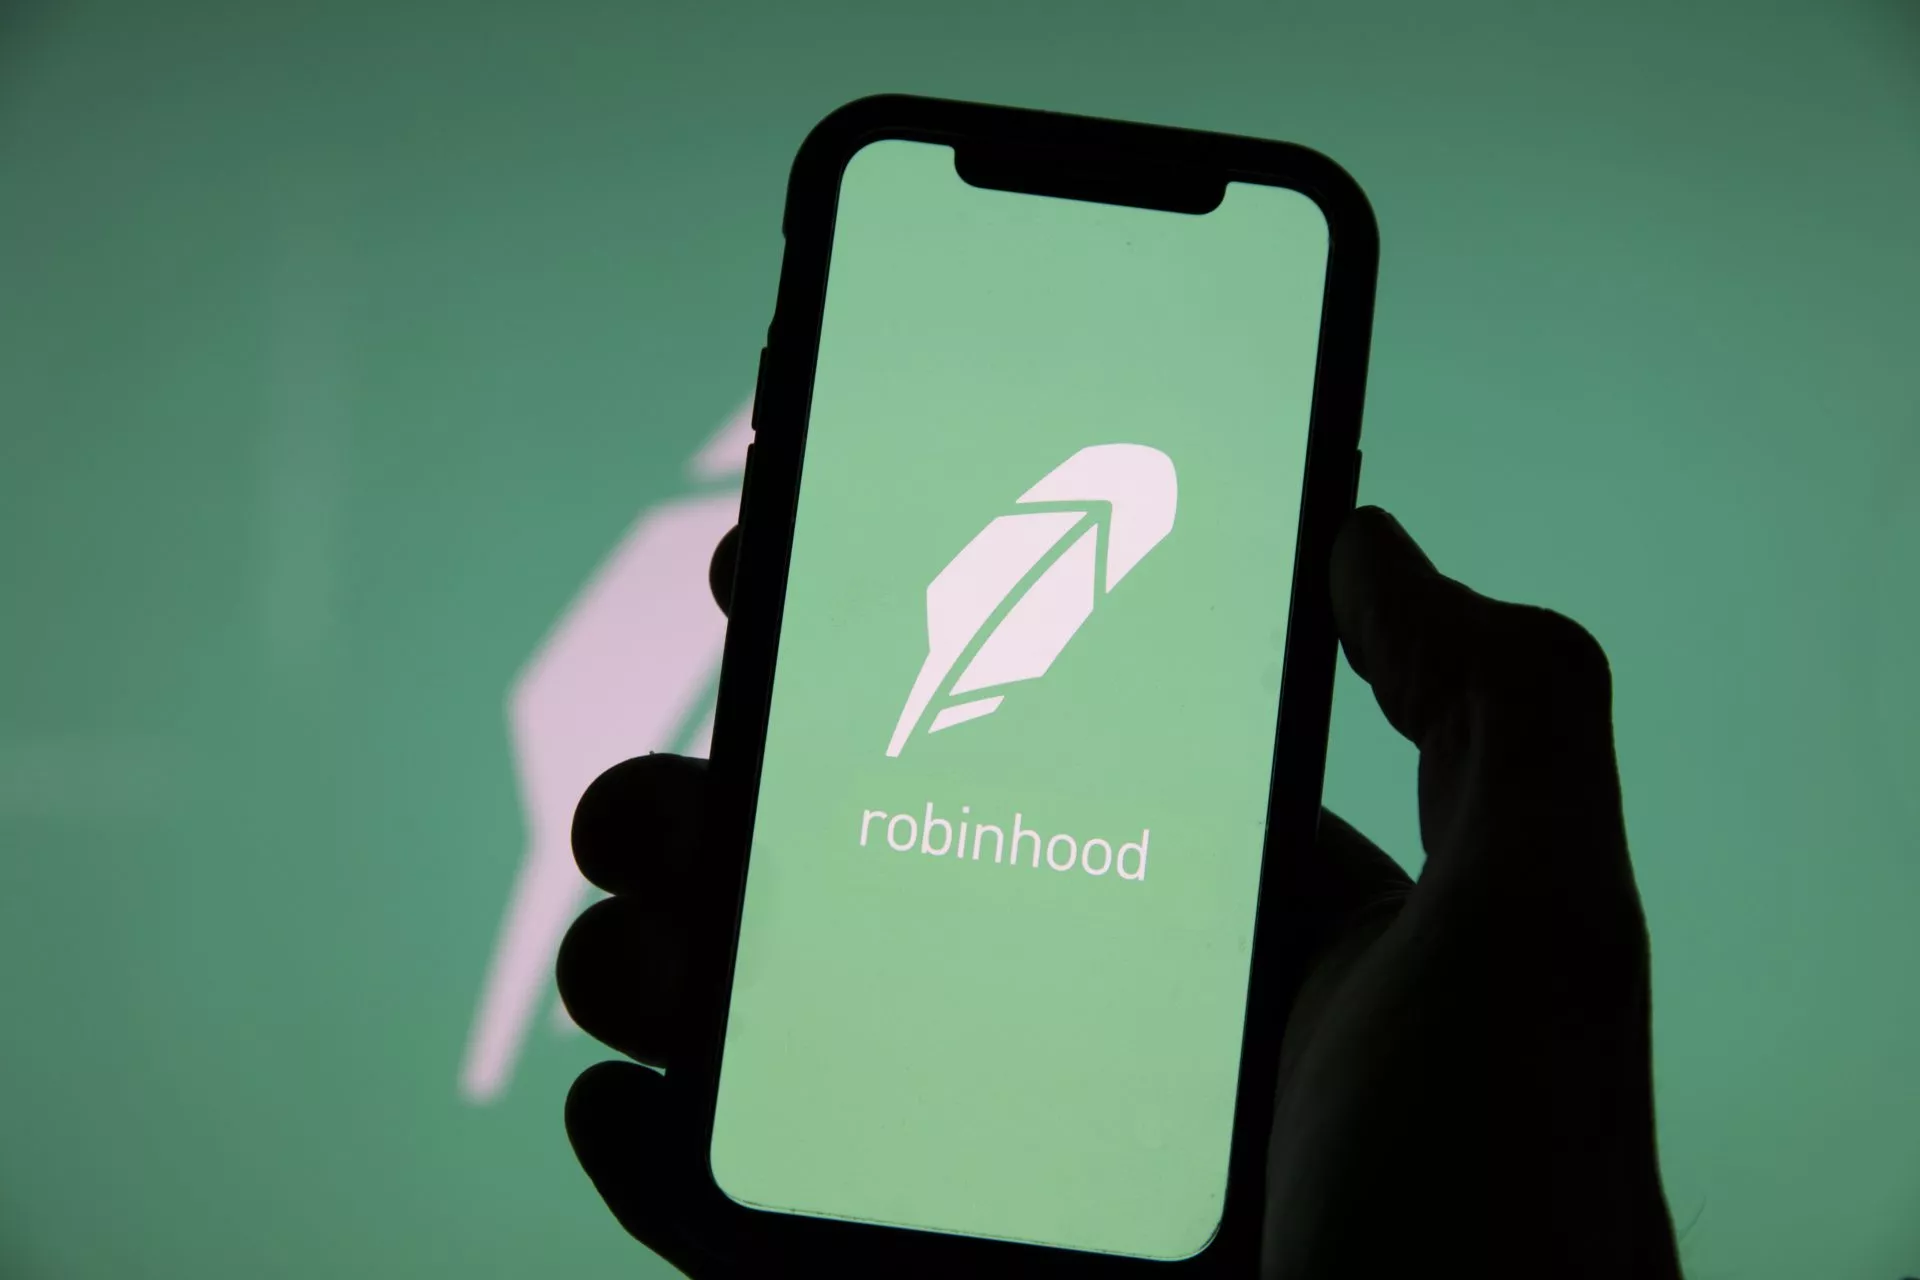 9,5 miljoen mensen verhandelden Crypto op de Robinhood app in Q1